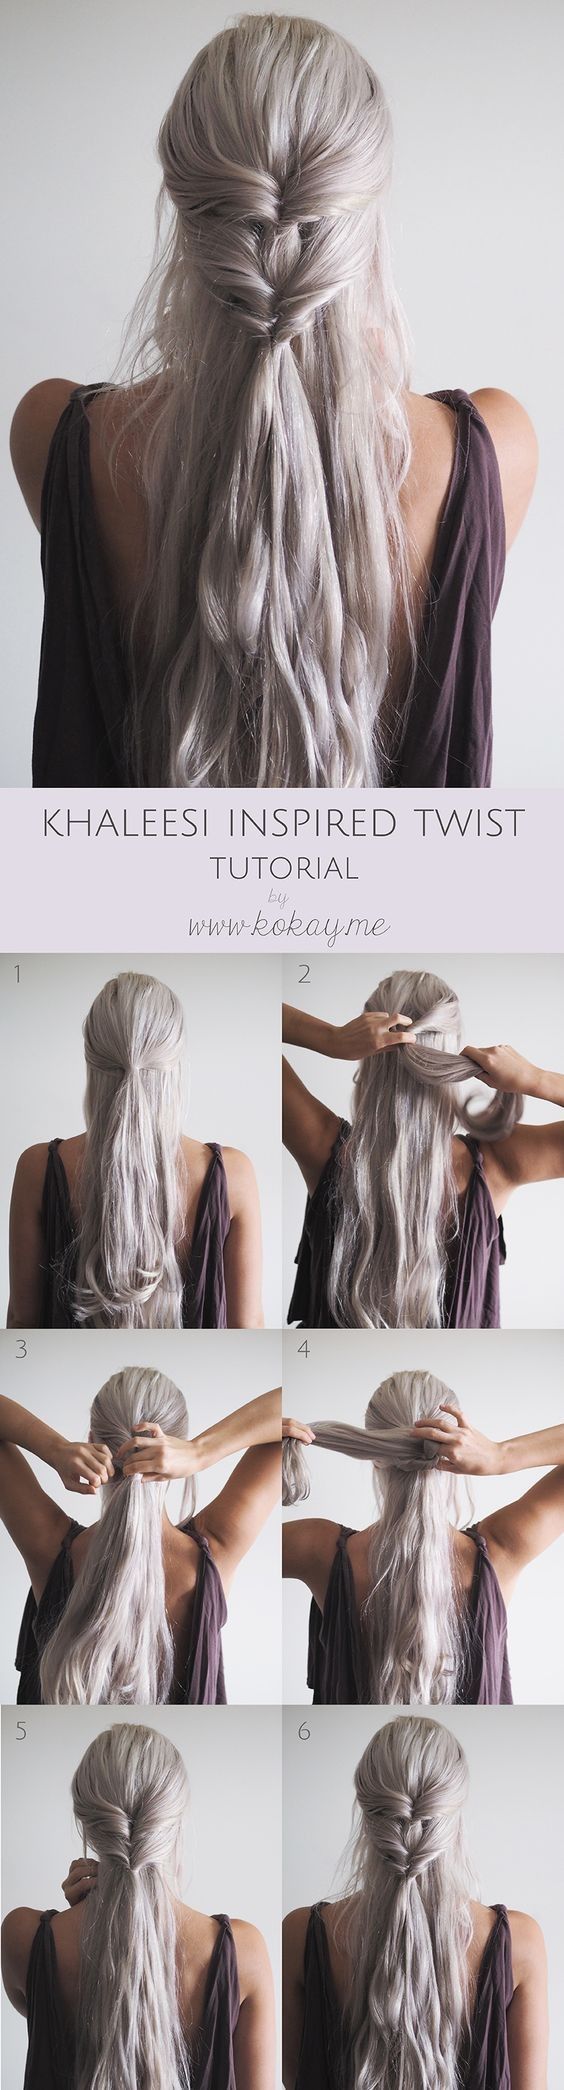 [ad_1]

Popular on Pinterest: 'Game of Thrones' Khaleesi-Inspired Braids
Source by SuperZhiDie
[ad_2]
			
			…